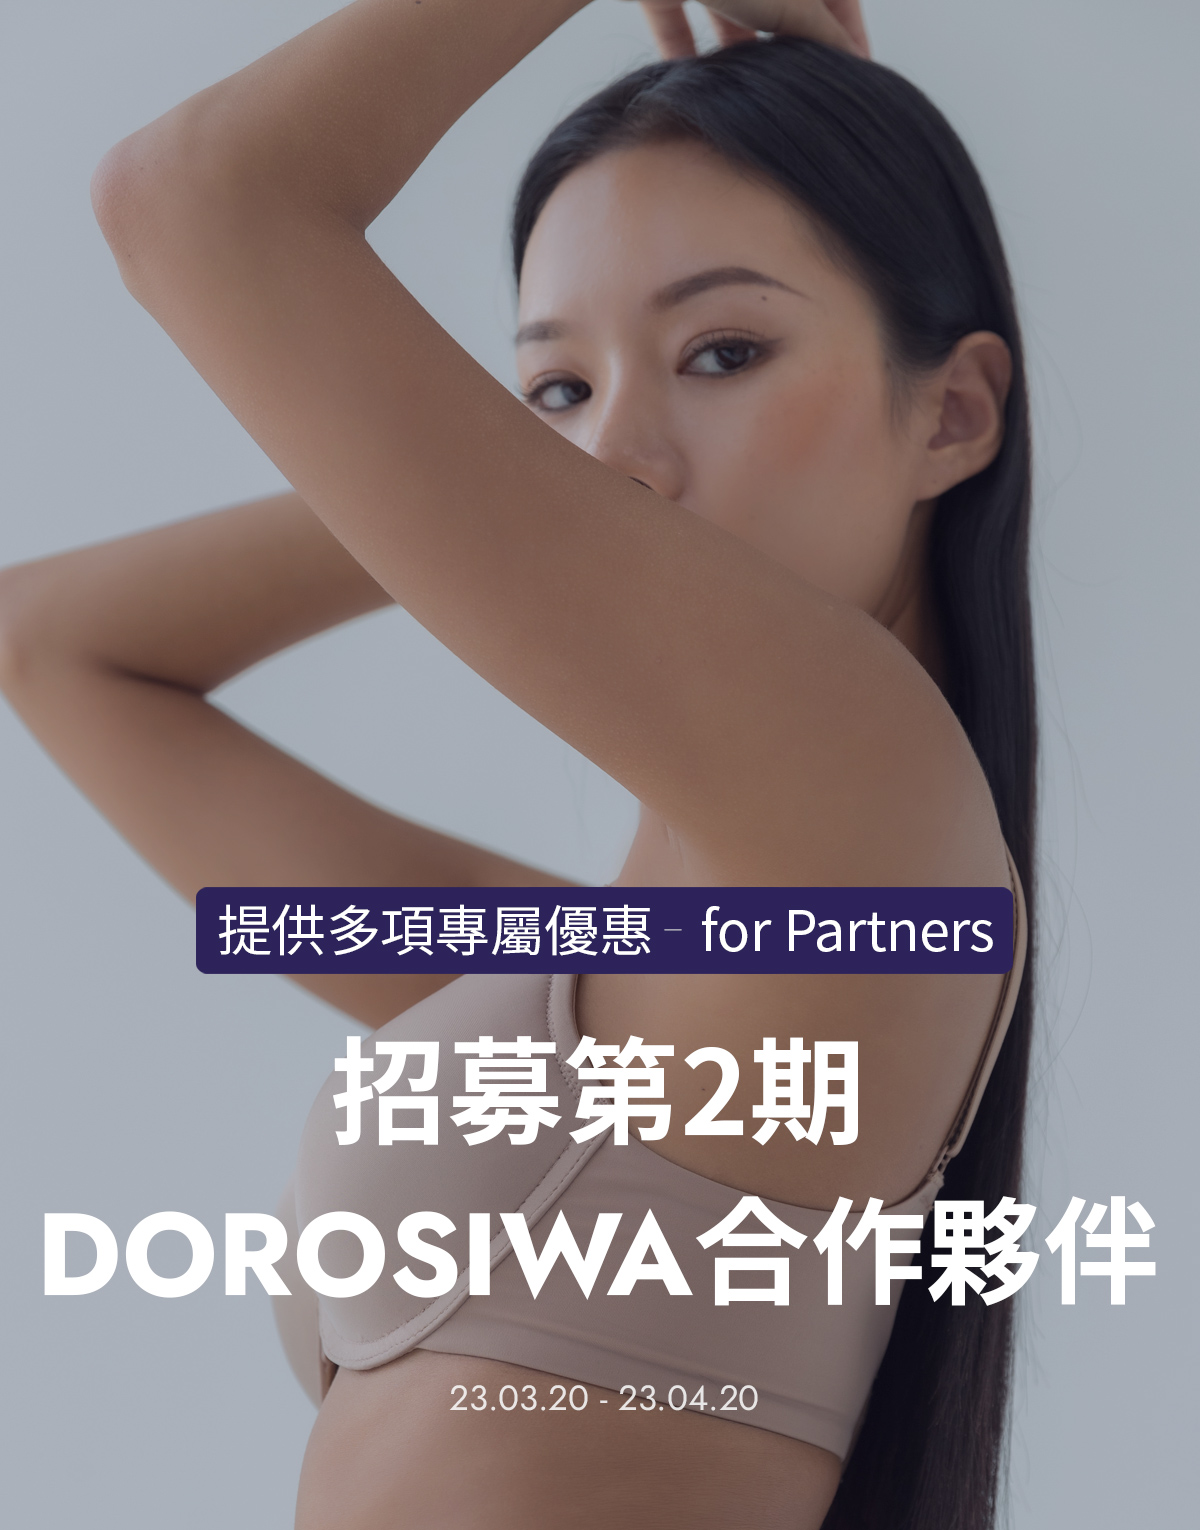 招募第2期 DOROSIWA合作夥伴